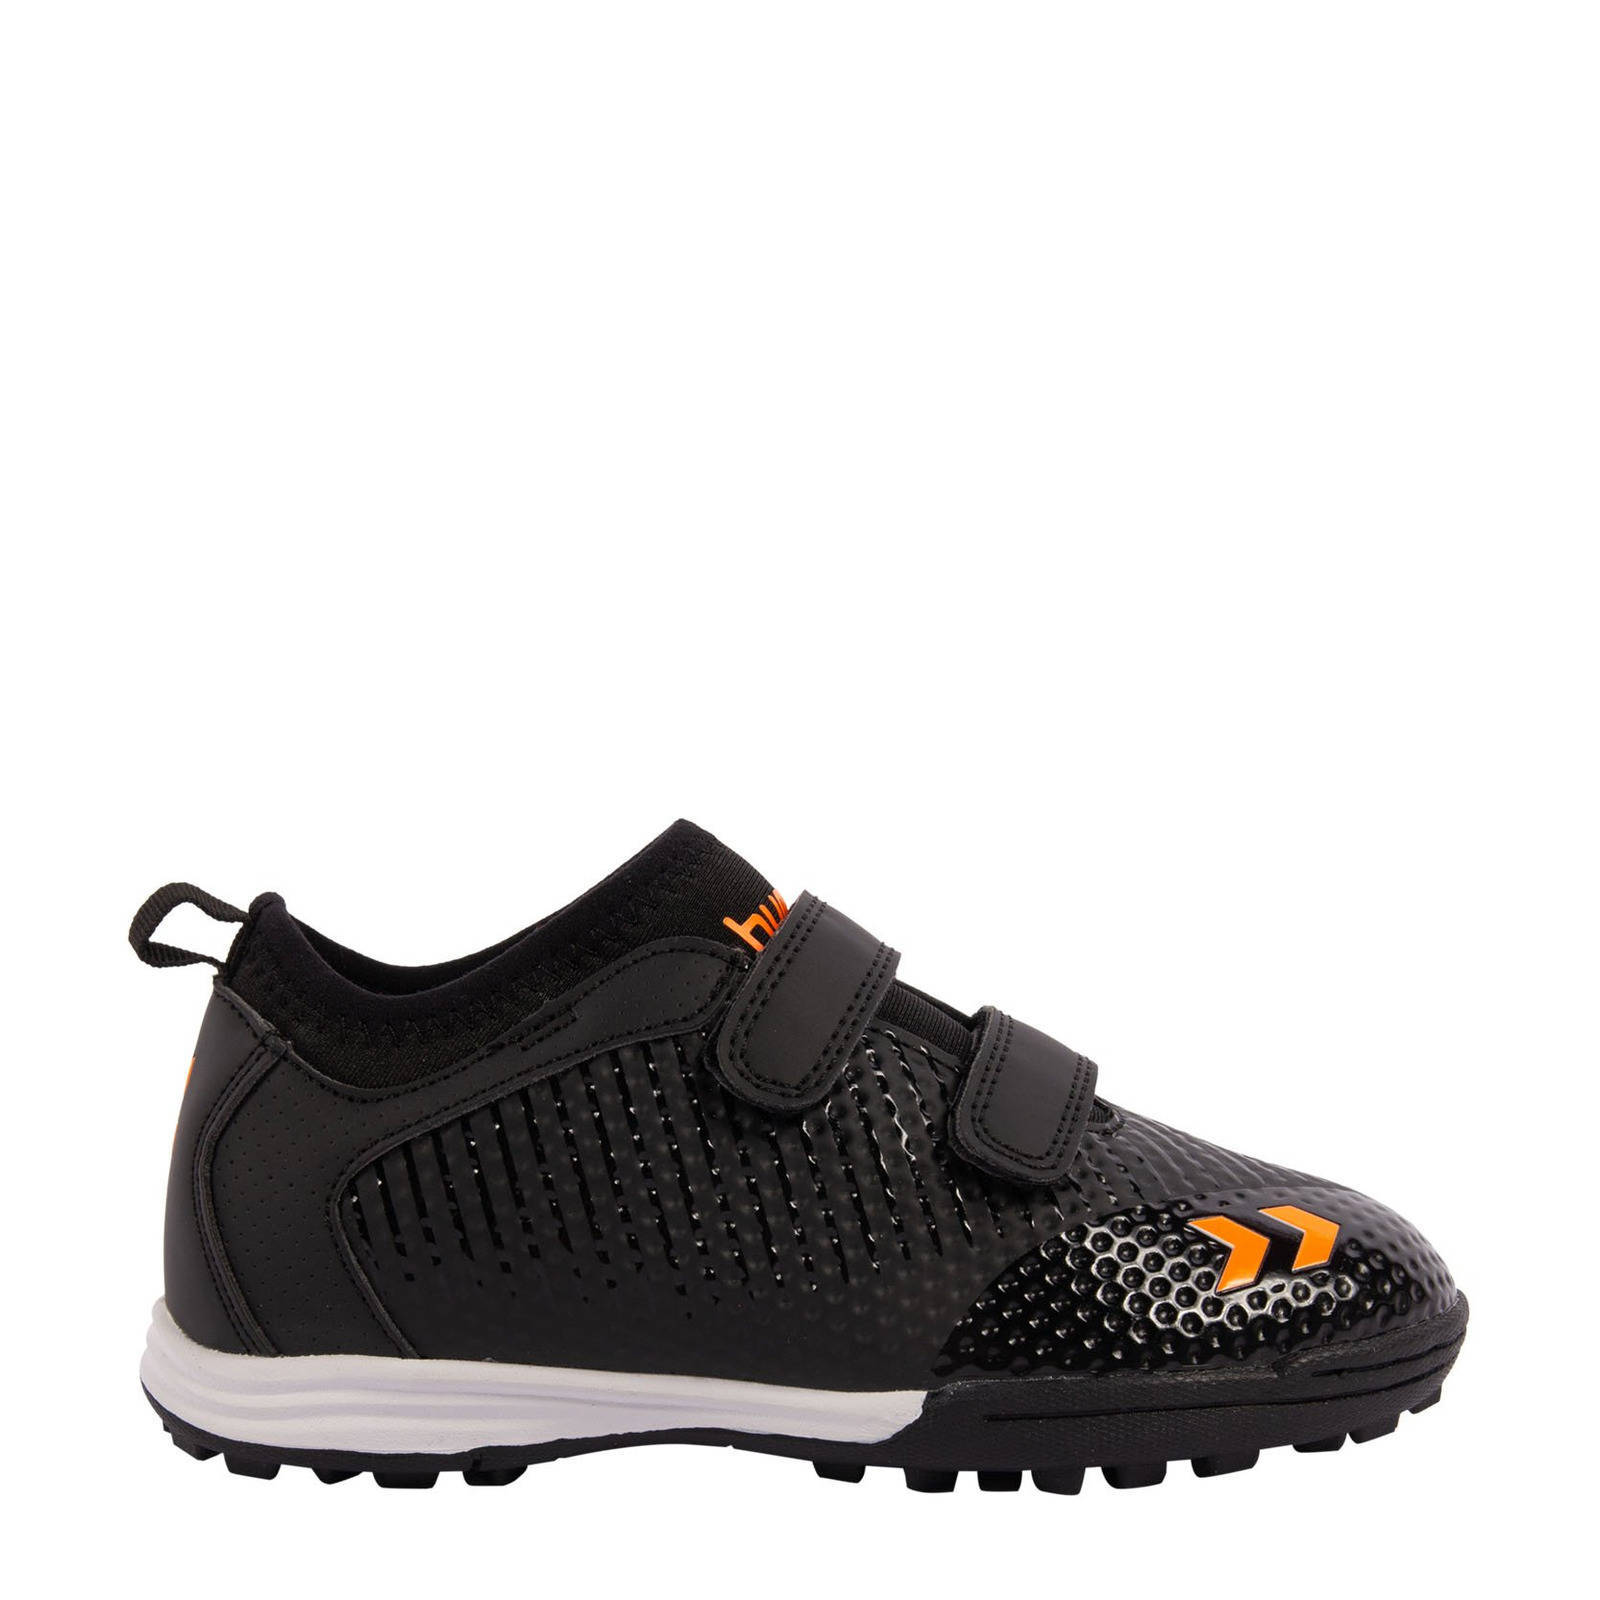 Hummel Zoom TF voetbalschoenen zwart/oranje online kopen